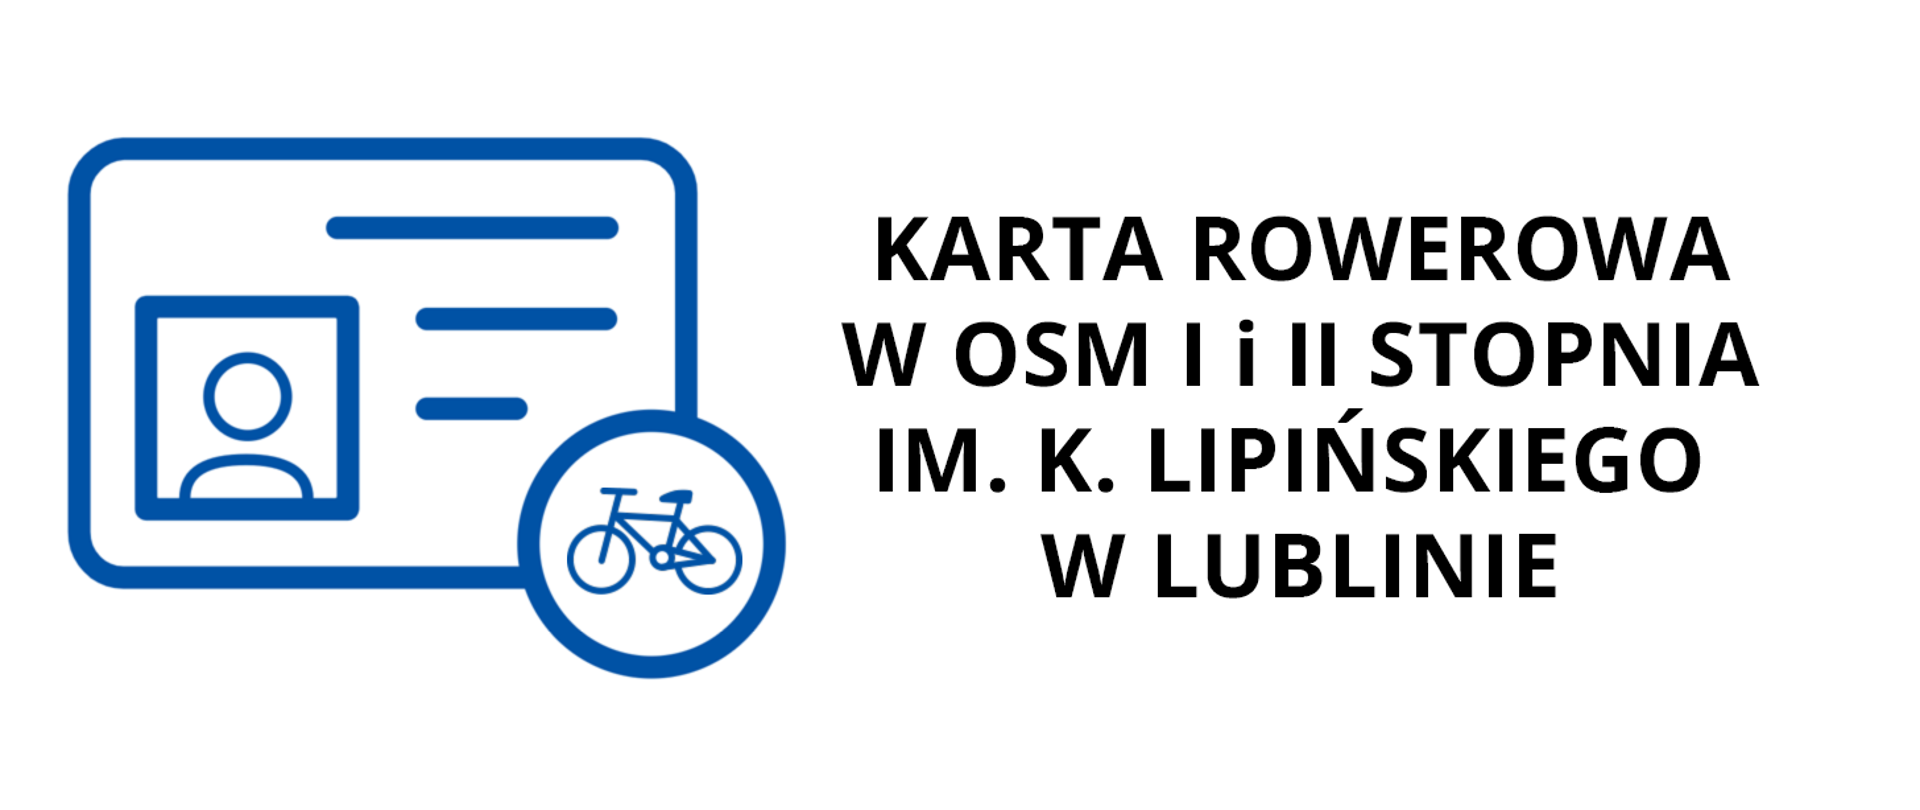 Zdjęcie przedstawia baner o białym tle, po lewej stronie znajduje się niebieska ikona dowodu osobistego z rowerem w kółku. Po prawej stronie znajduje się czarny napis: Karta rowerowa w osm I i II stopnia im. K. Lipińskiego w Lublinie 